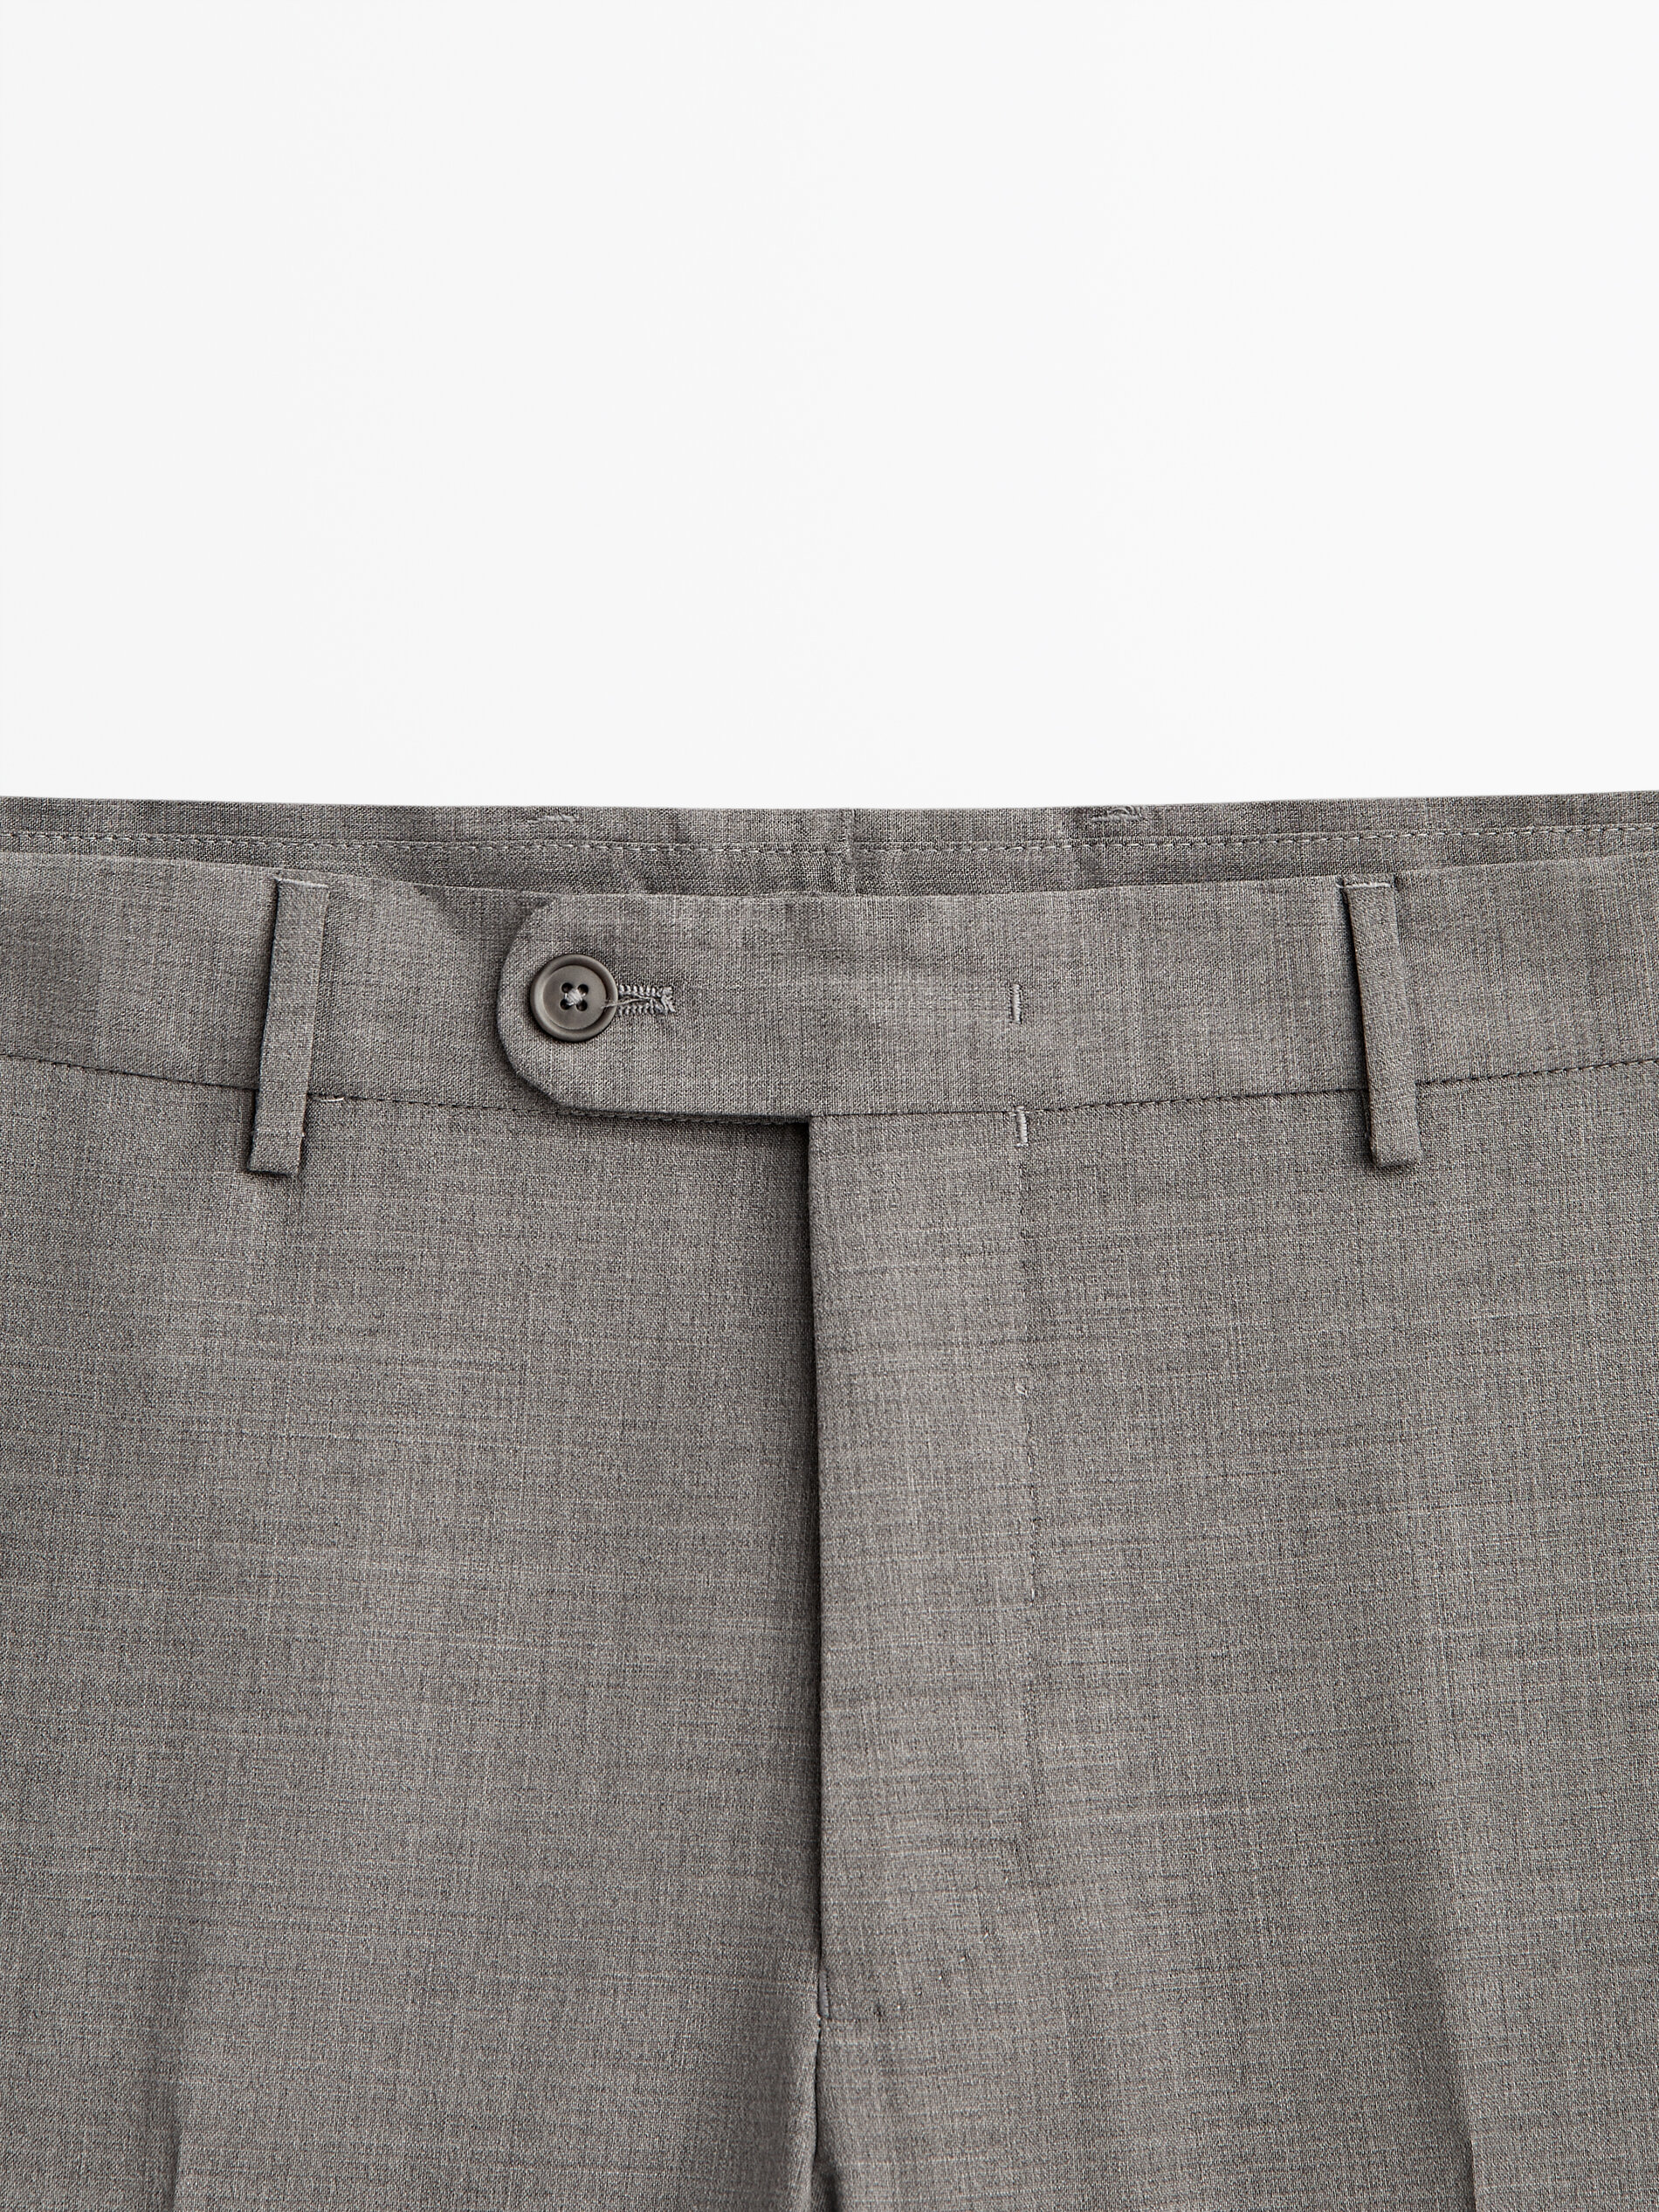 Massimo Dutti Pantalon de costume gris clair style d\u2019affaires Mode Costumes Pantalons de costume 